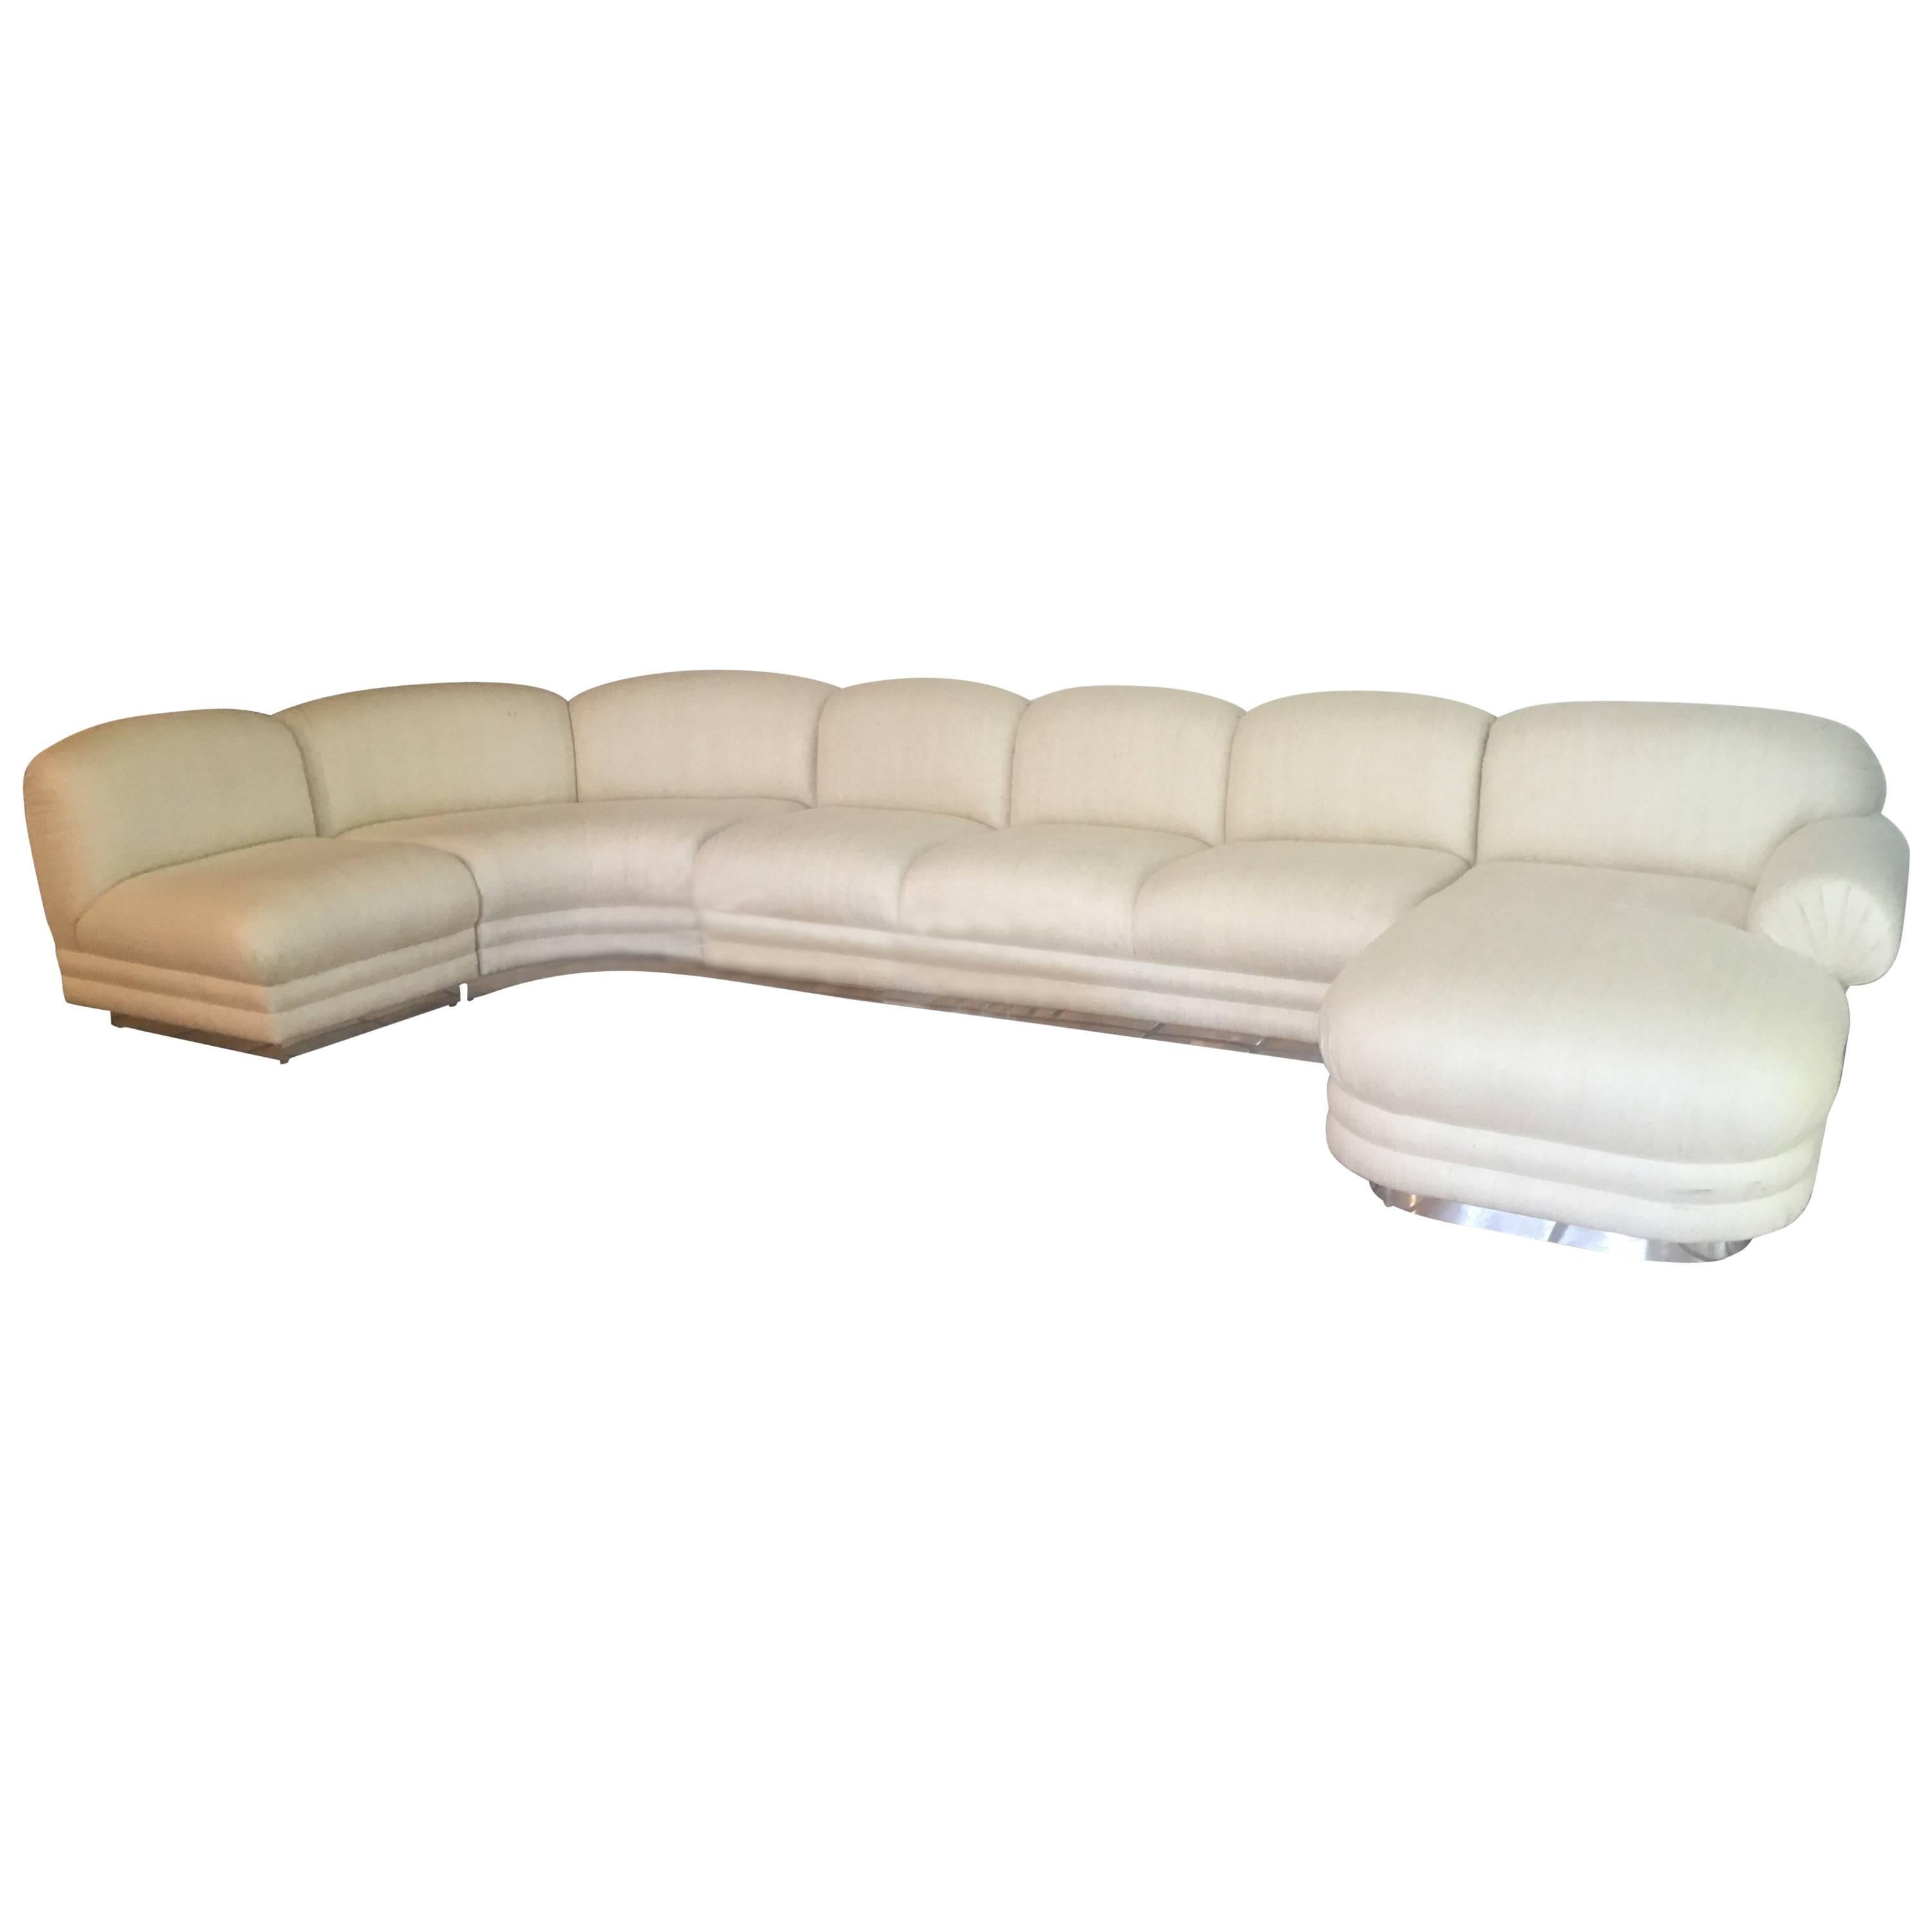 Vierteiliges Sofa im Stil von Milo Baughman mit verchromtem Chaiselongue-Sofa